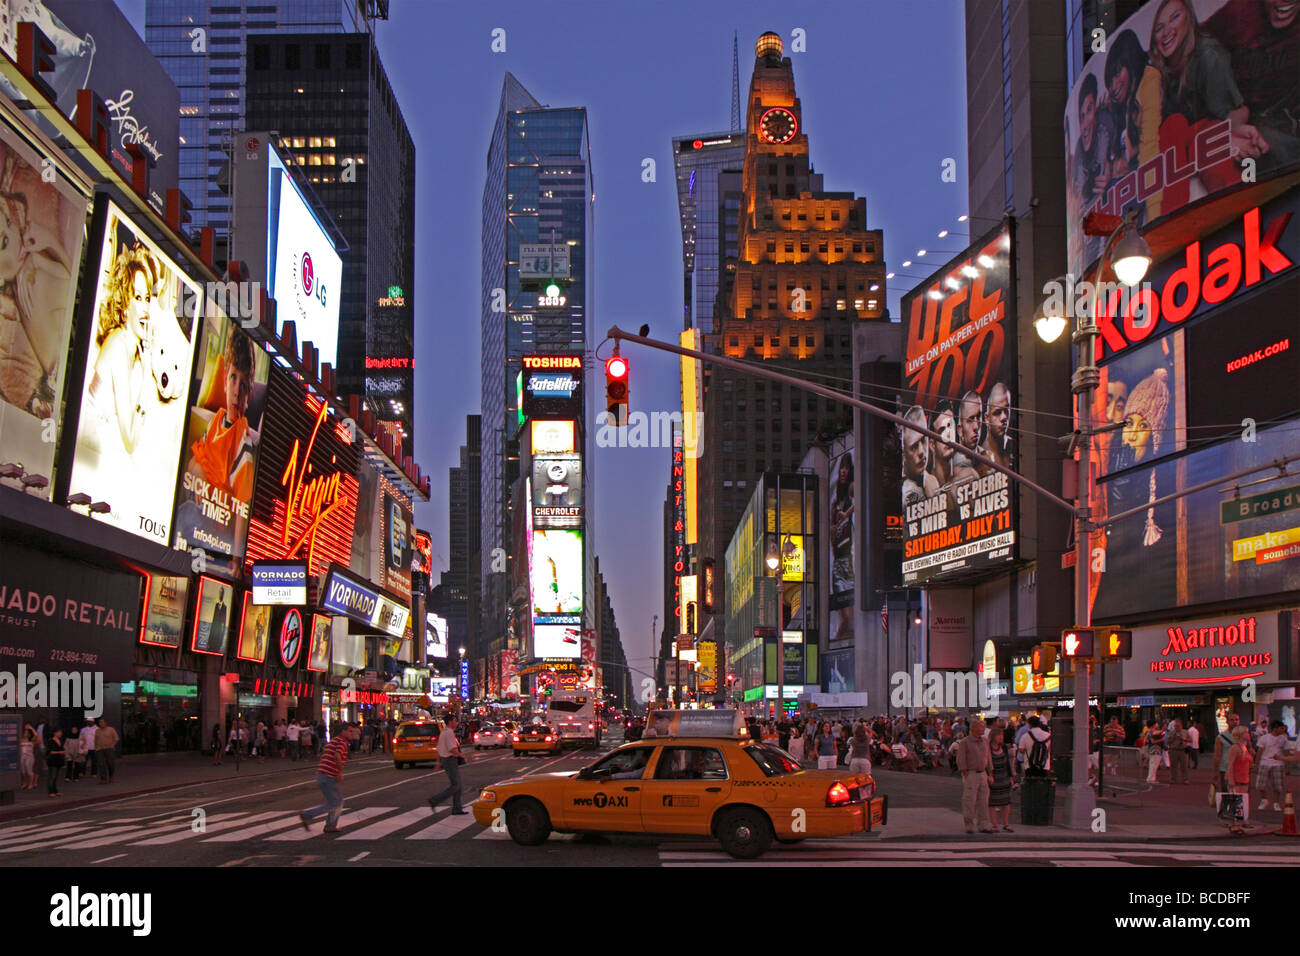 Soirée photo de Times Square, Manhattan, New York City Banque D'Images